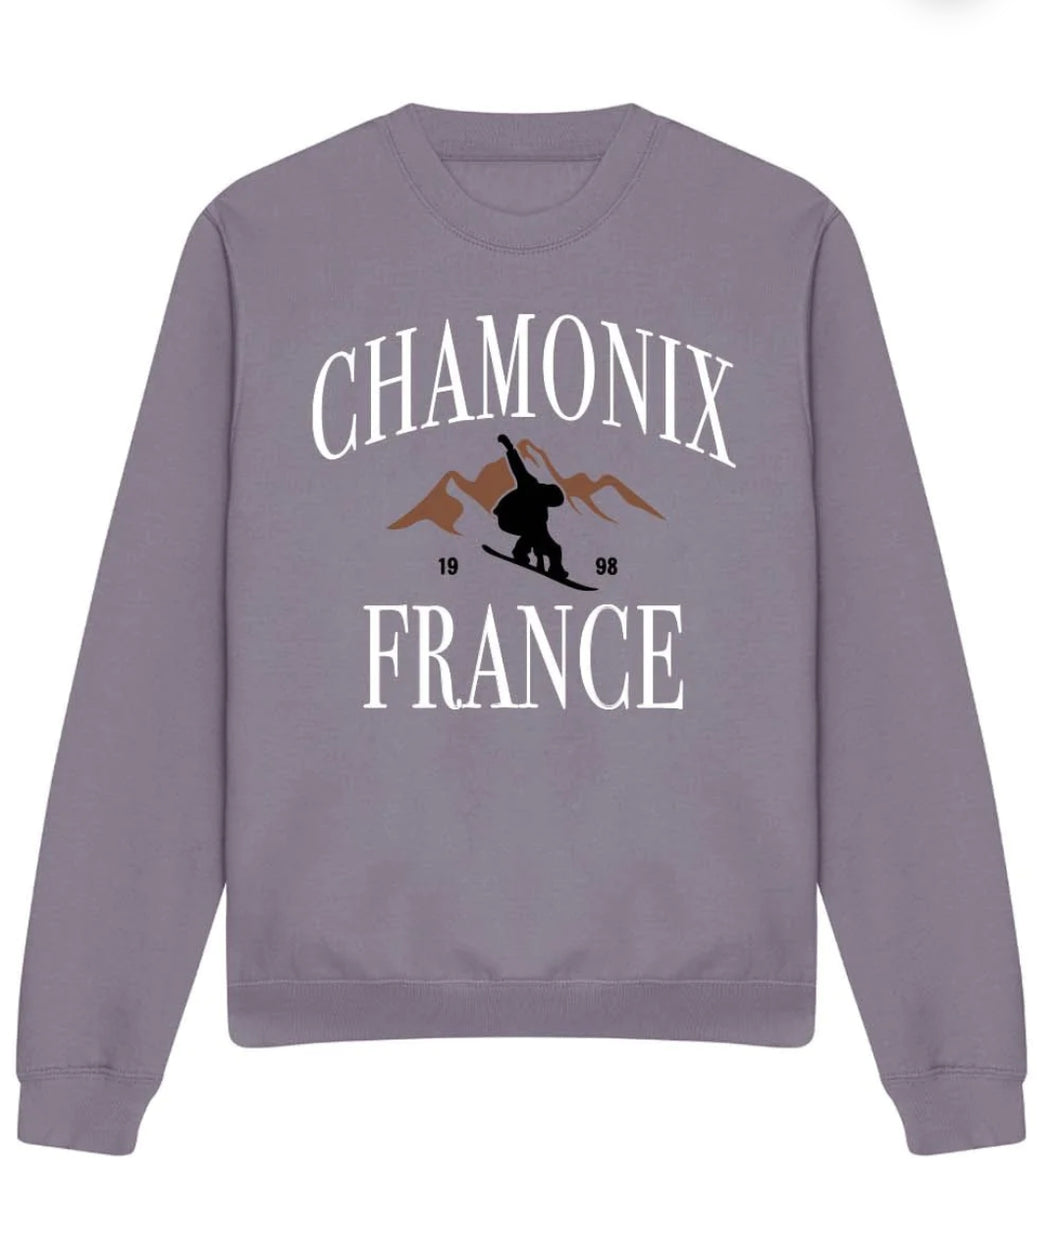 Chamonix sweatshirt